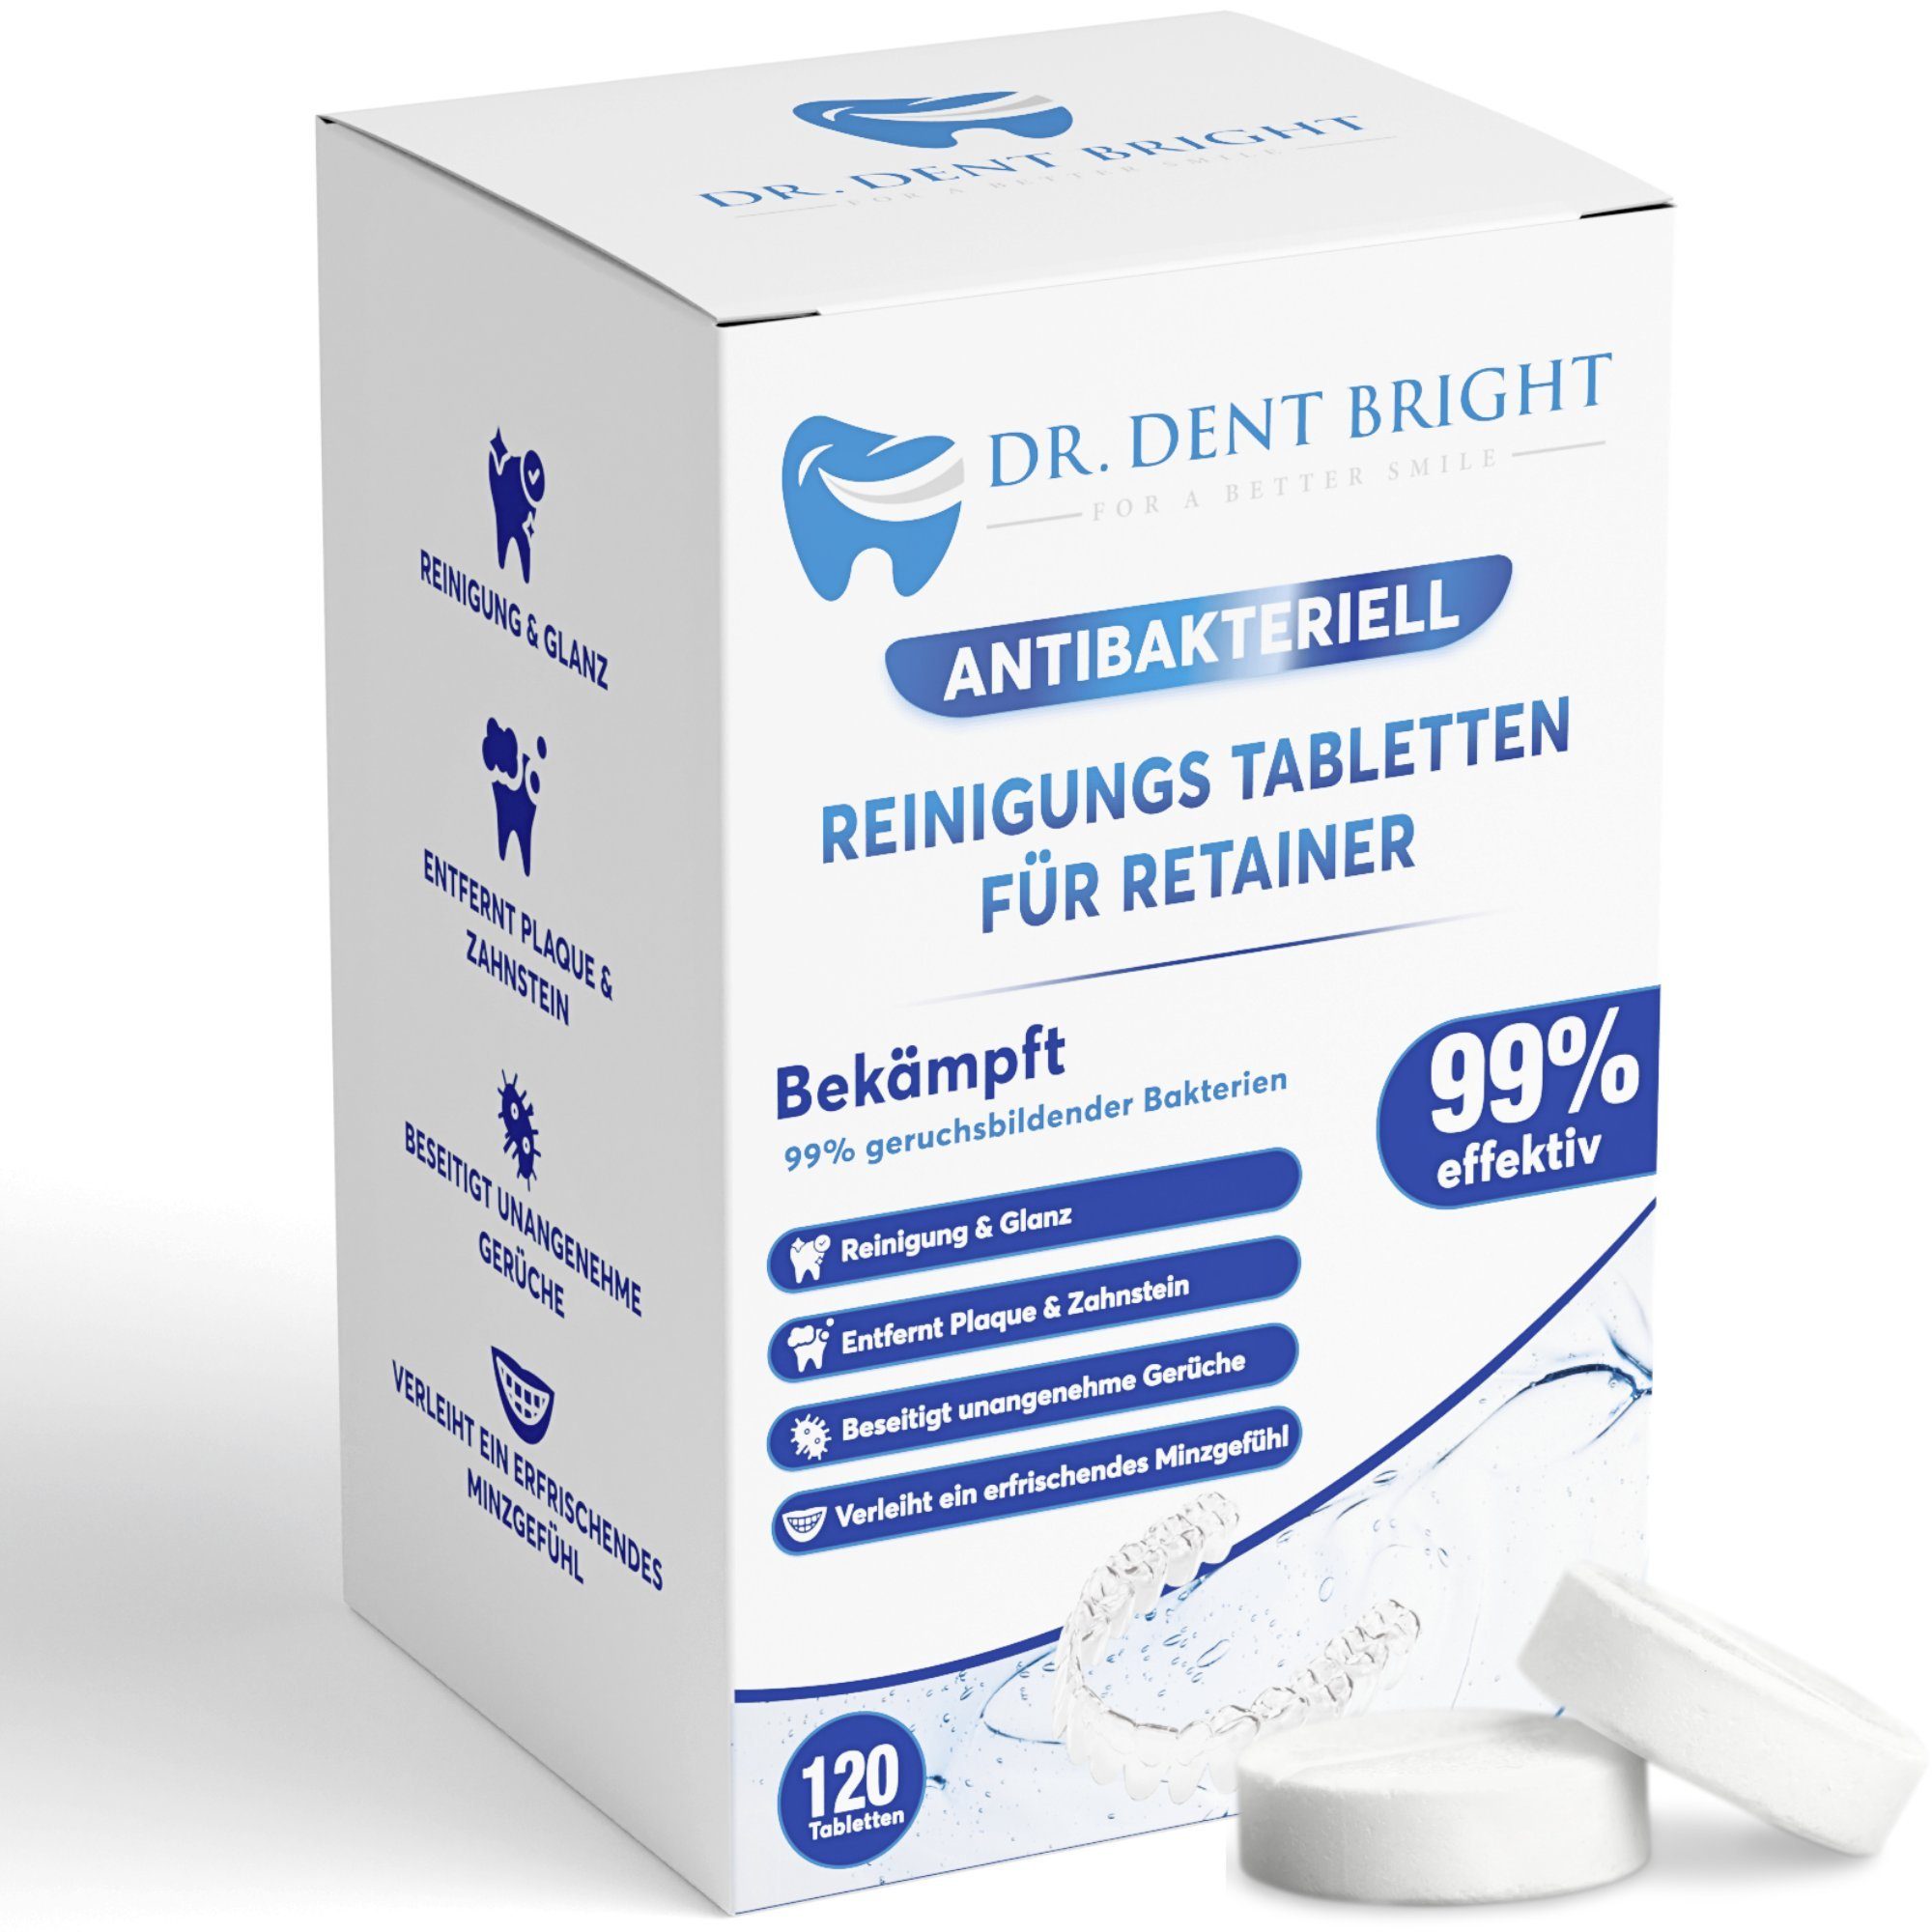 Dr. Dent Bright Retainer Reinigungstabletten – 120 St für Zahnspangen, Zahnersatz etc. Reinigungstabletten (120-St. Für die gängigsten Arten von Zahnprothetiker geeignet)